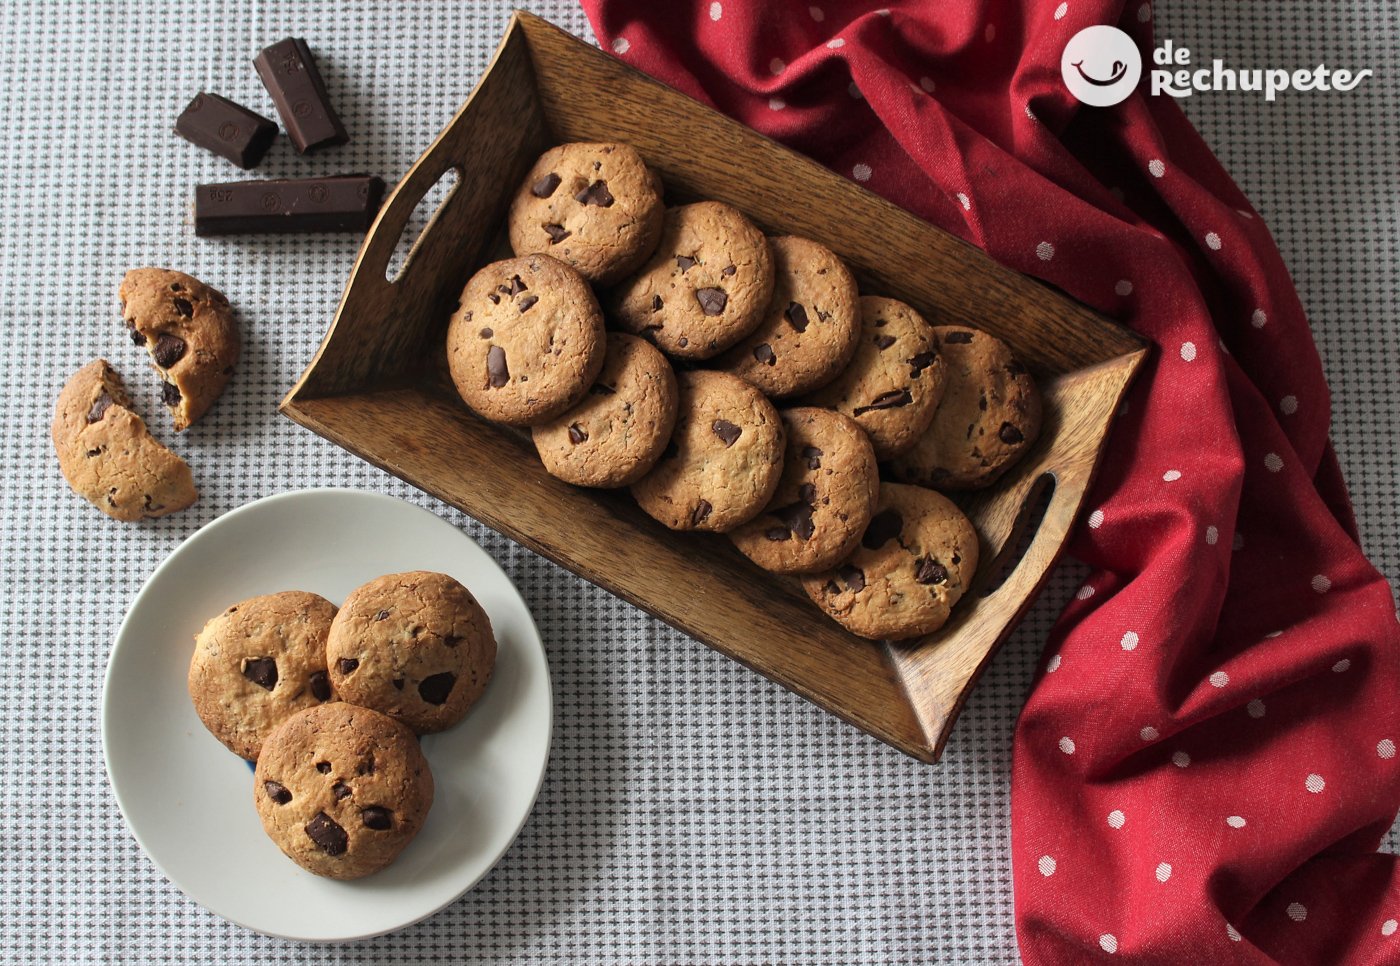 Receta de galletas de chocolate caseras: ¡la mejores!